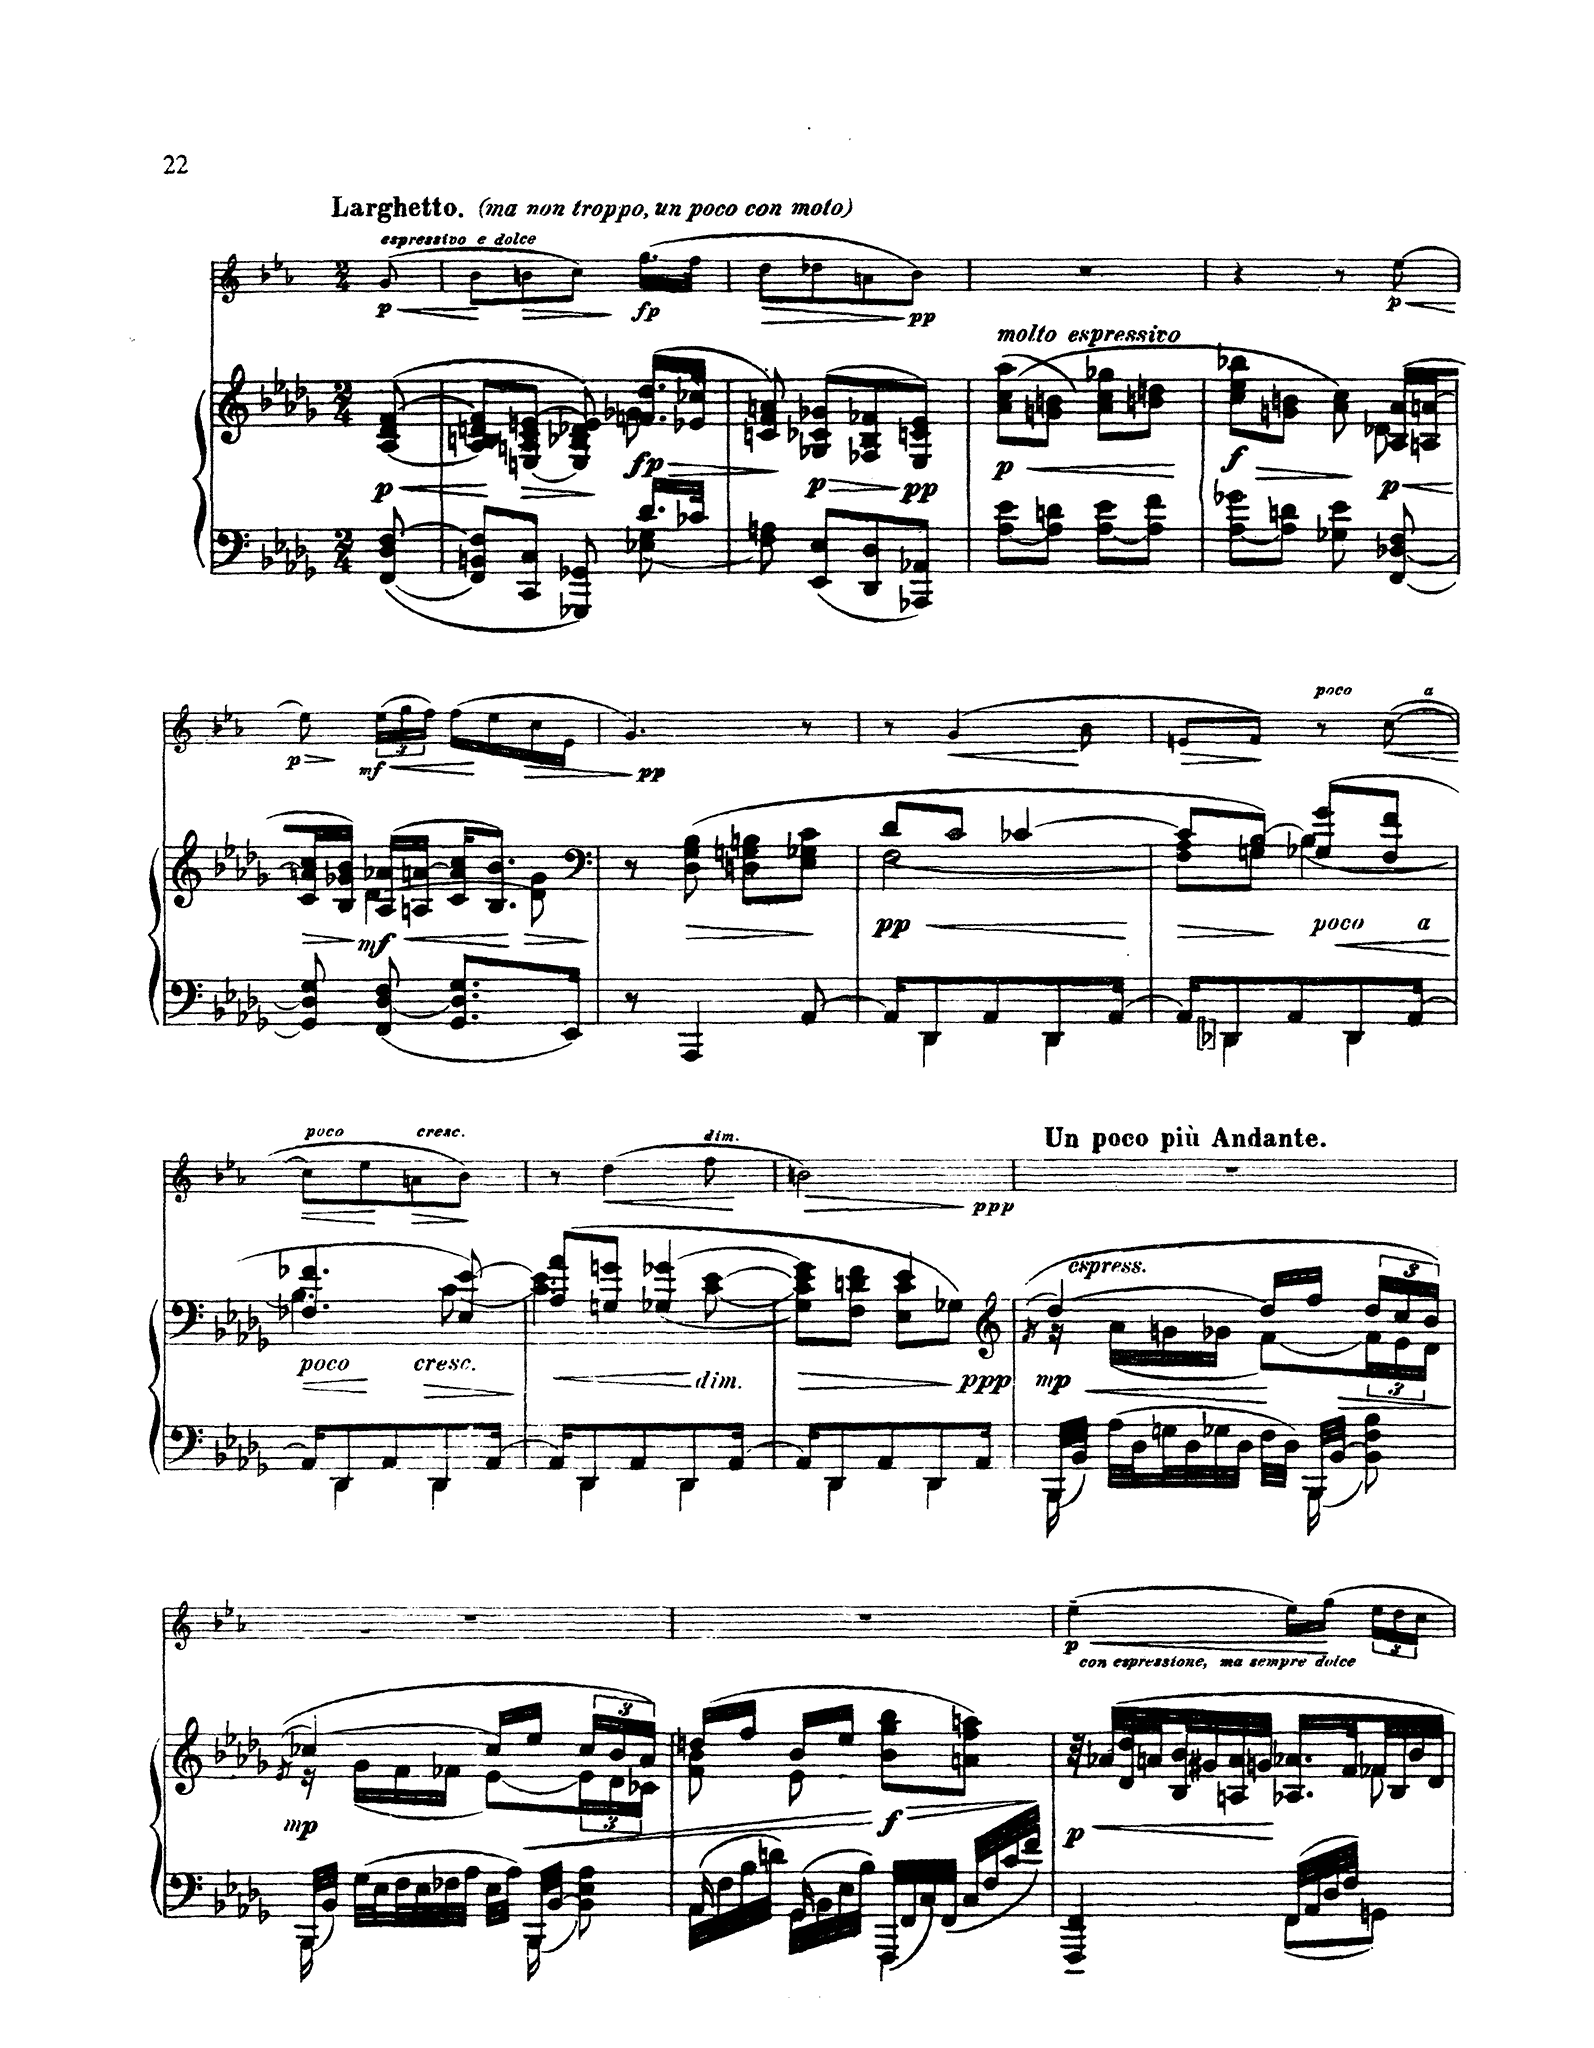 Reger Sonata in A-flat Major, Op. 49 No. 1 - Movement 3